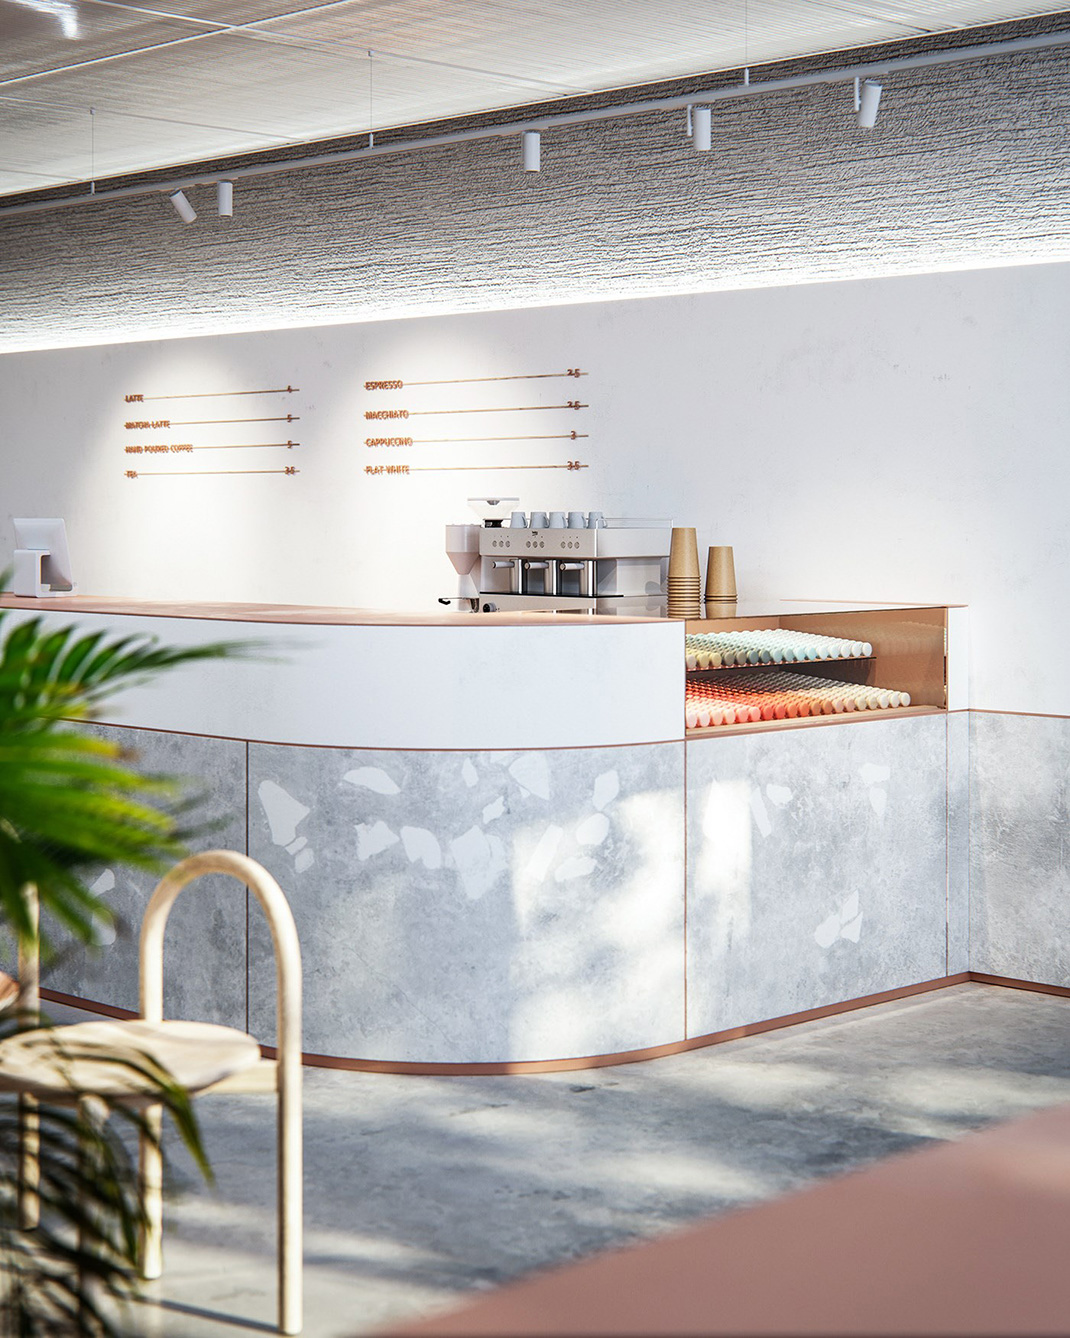 马卡龙主题咖啡厅设计 乌克兰 咖啡厅 马卡龙 简洁风 logo设计 vi设计 空间设计 视觉餐饮